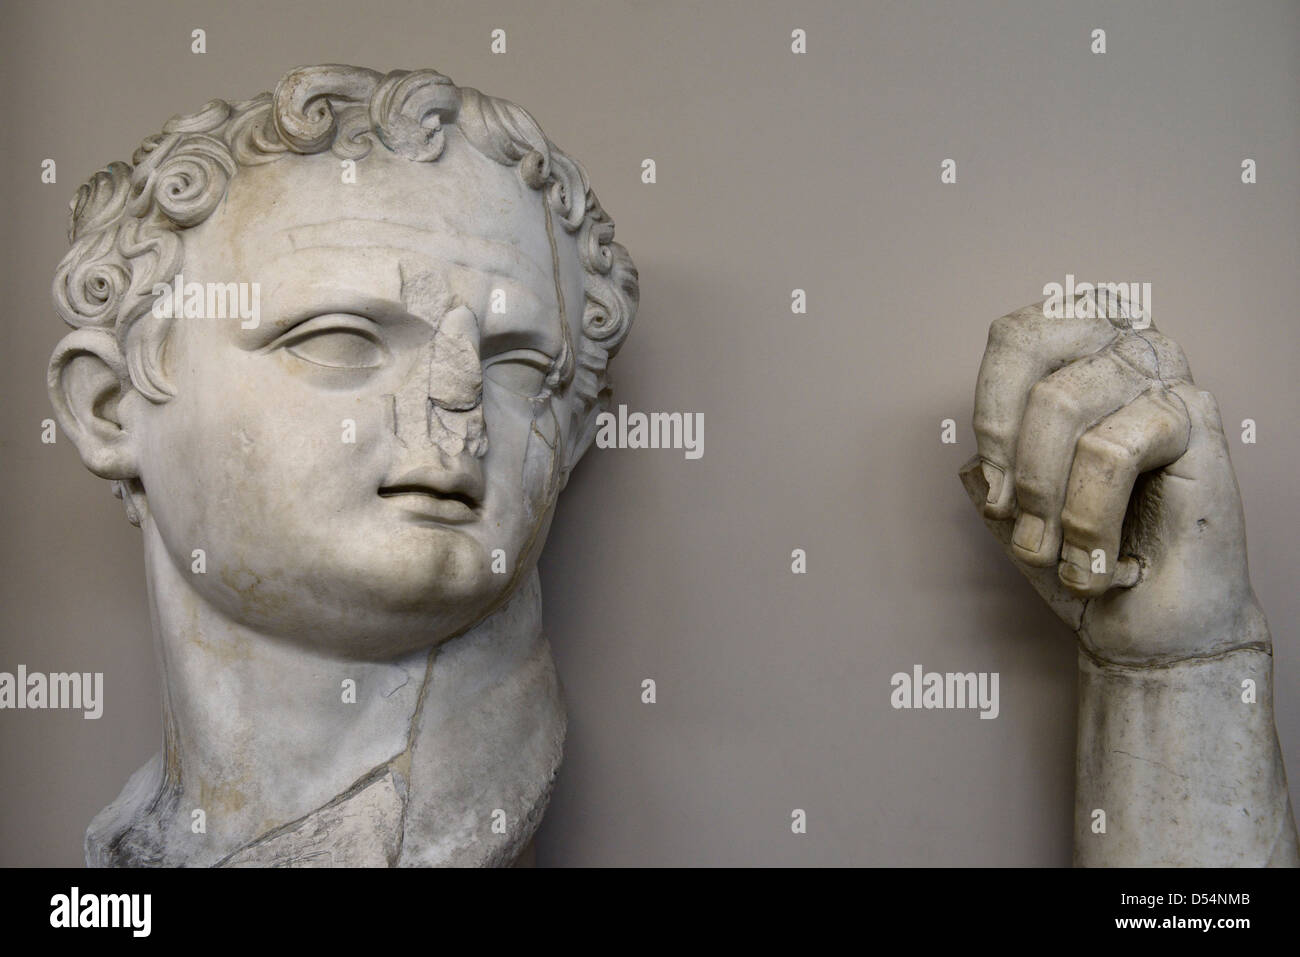 Ruiné sculpture de la tête et la main de l'empereur romain Domitien tyran brutal à Ephèse Turquie Musée Banque D'Images